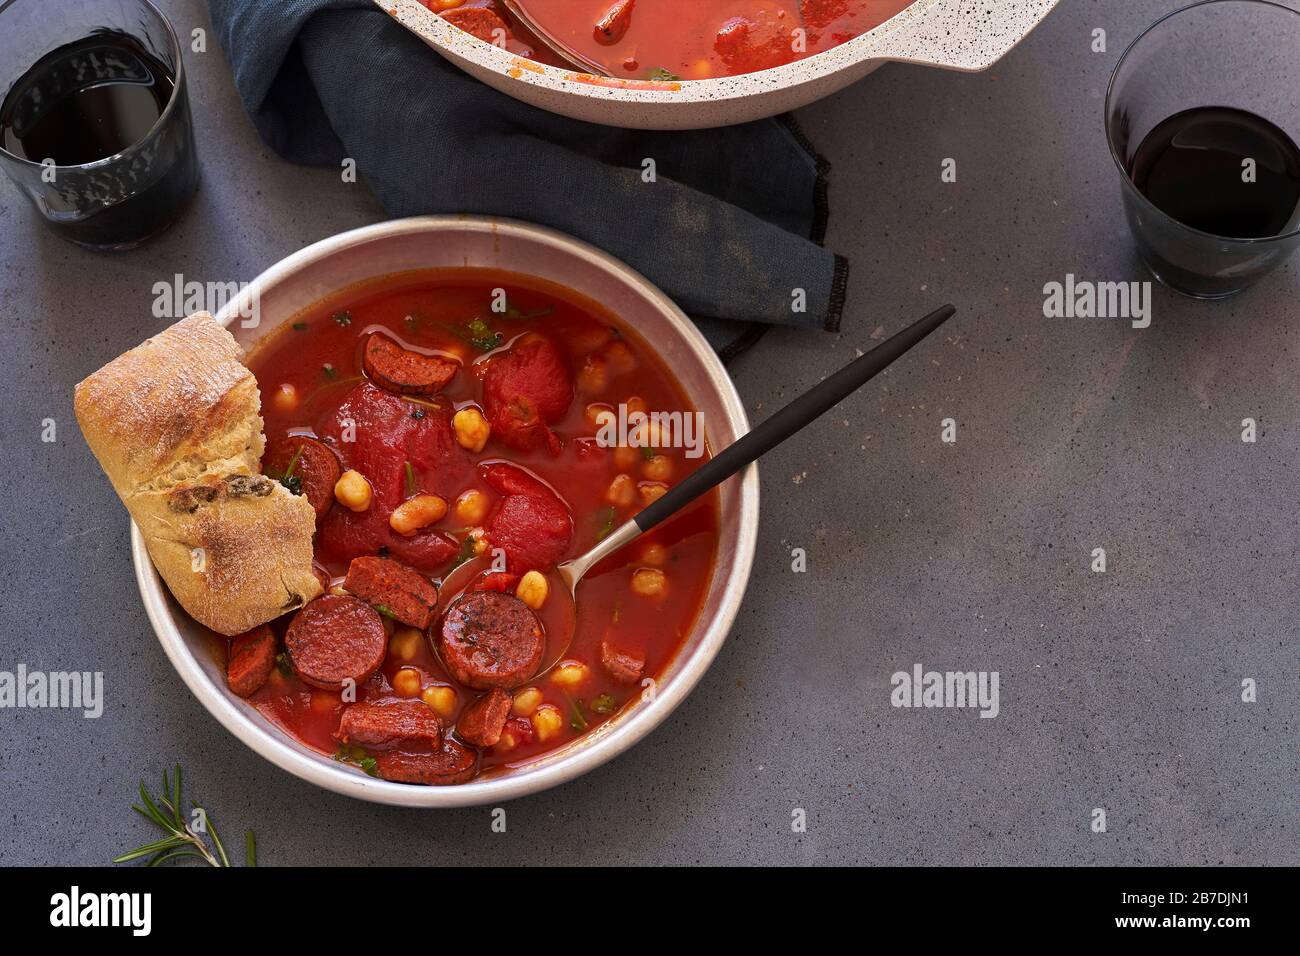 Soupe de tomates aux pois chiches, saucisse de chorizo et persil Banque D'Images